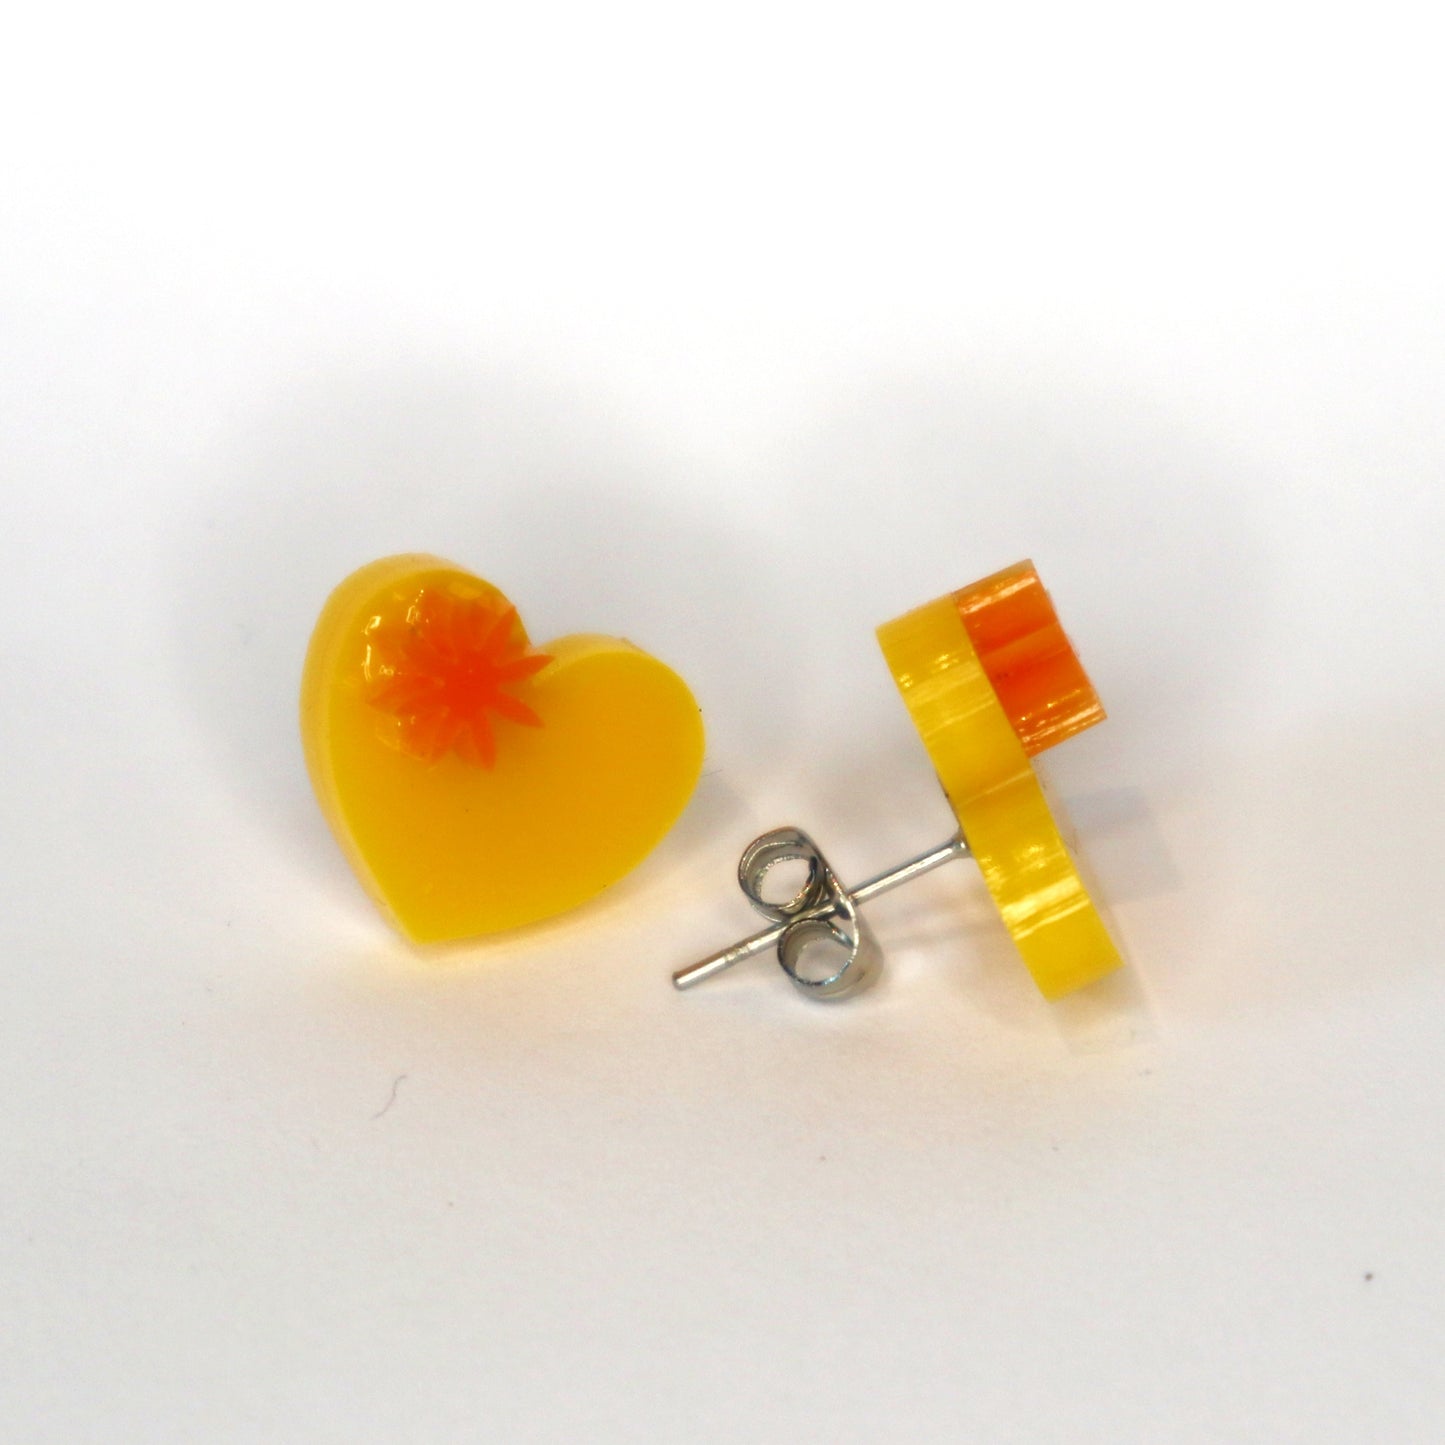 Heart laser cut acrylic earrings - yellow